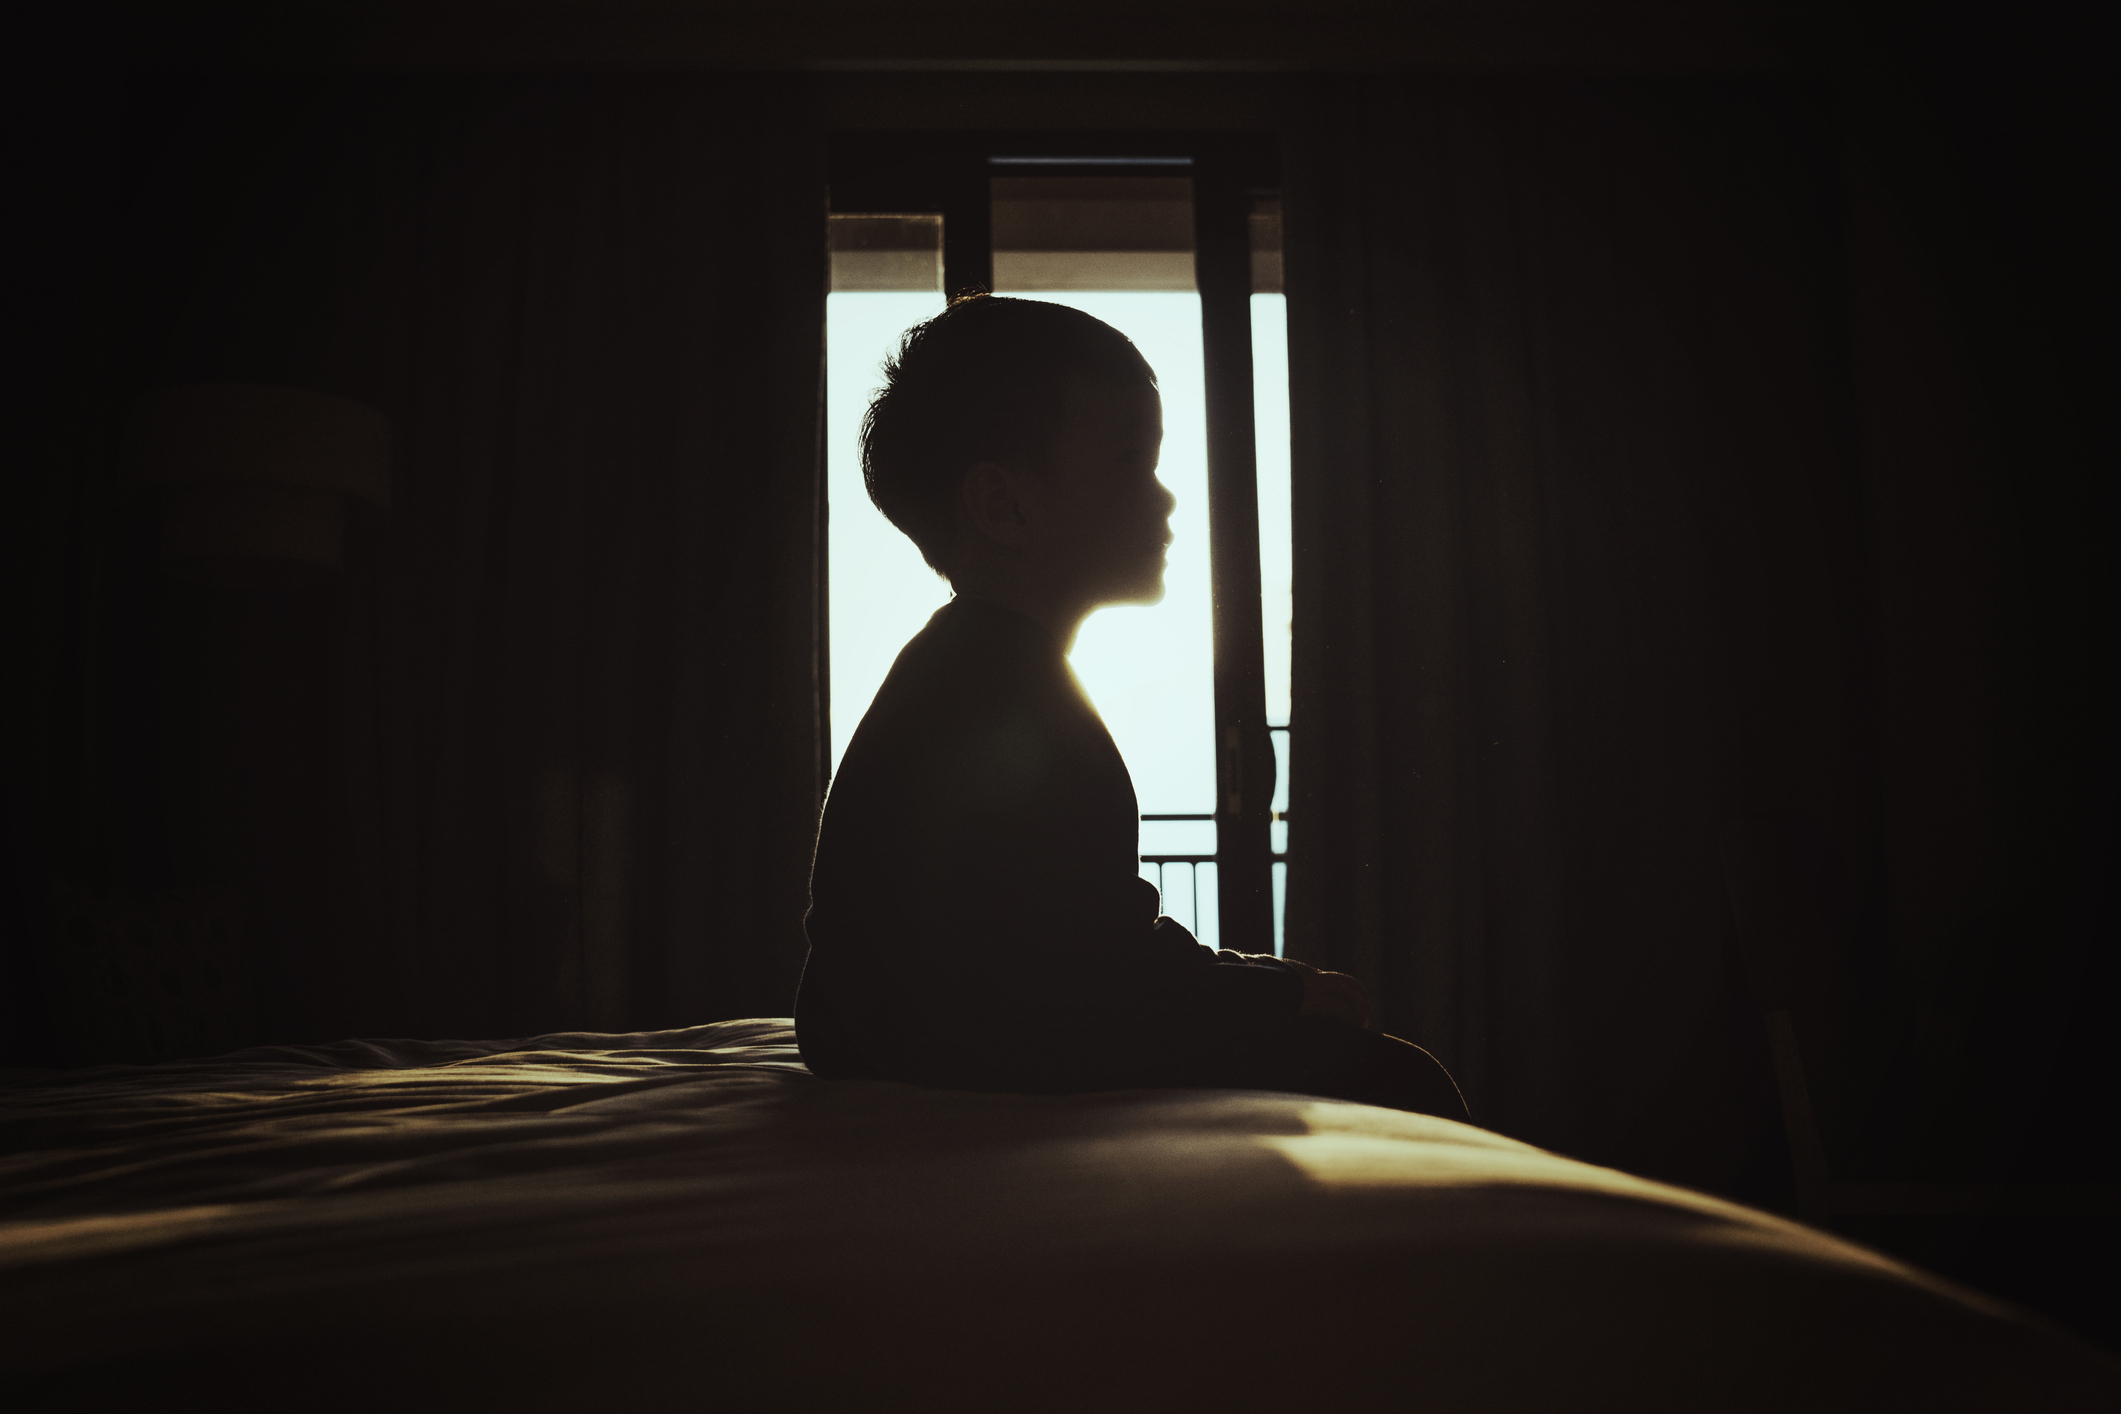 A boy sitting in a dark bedroom